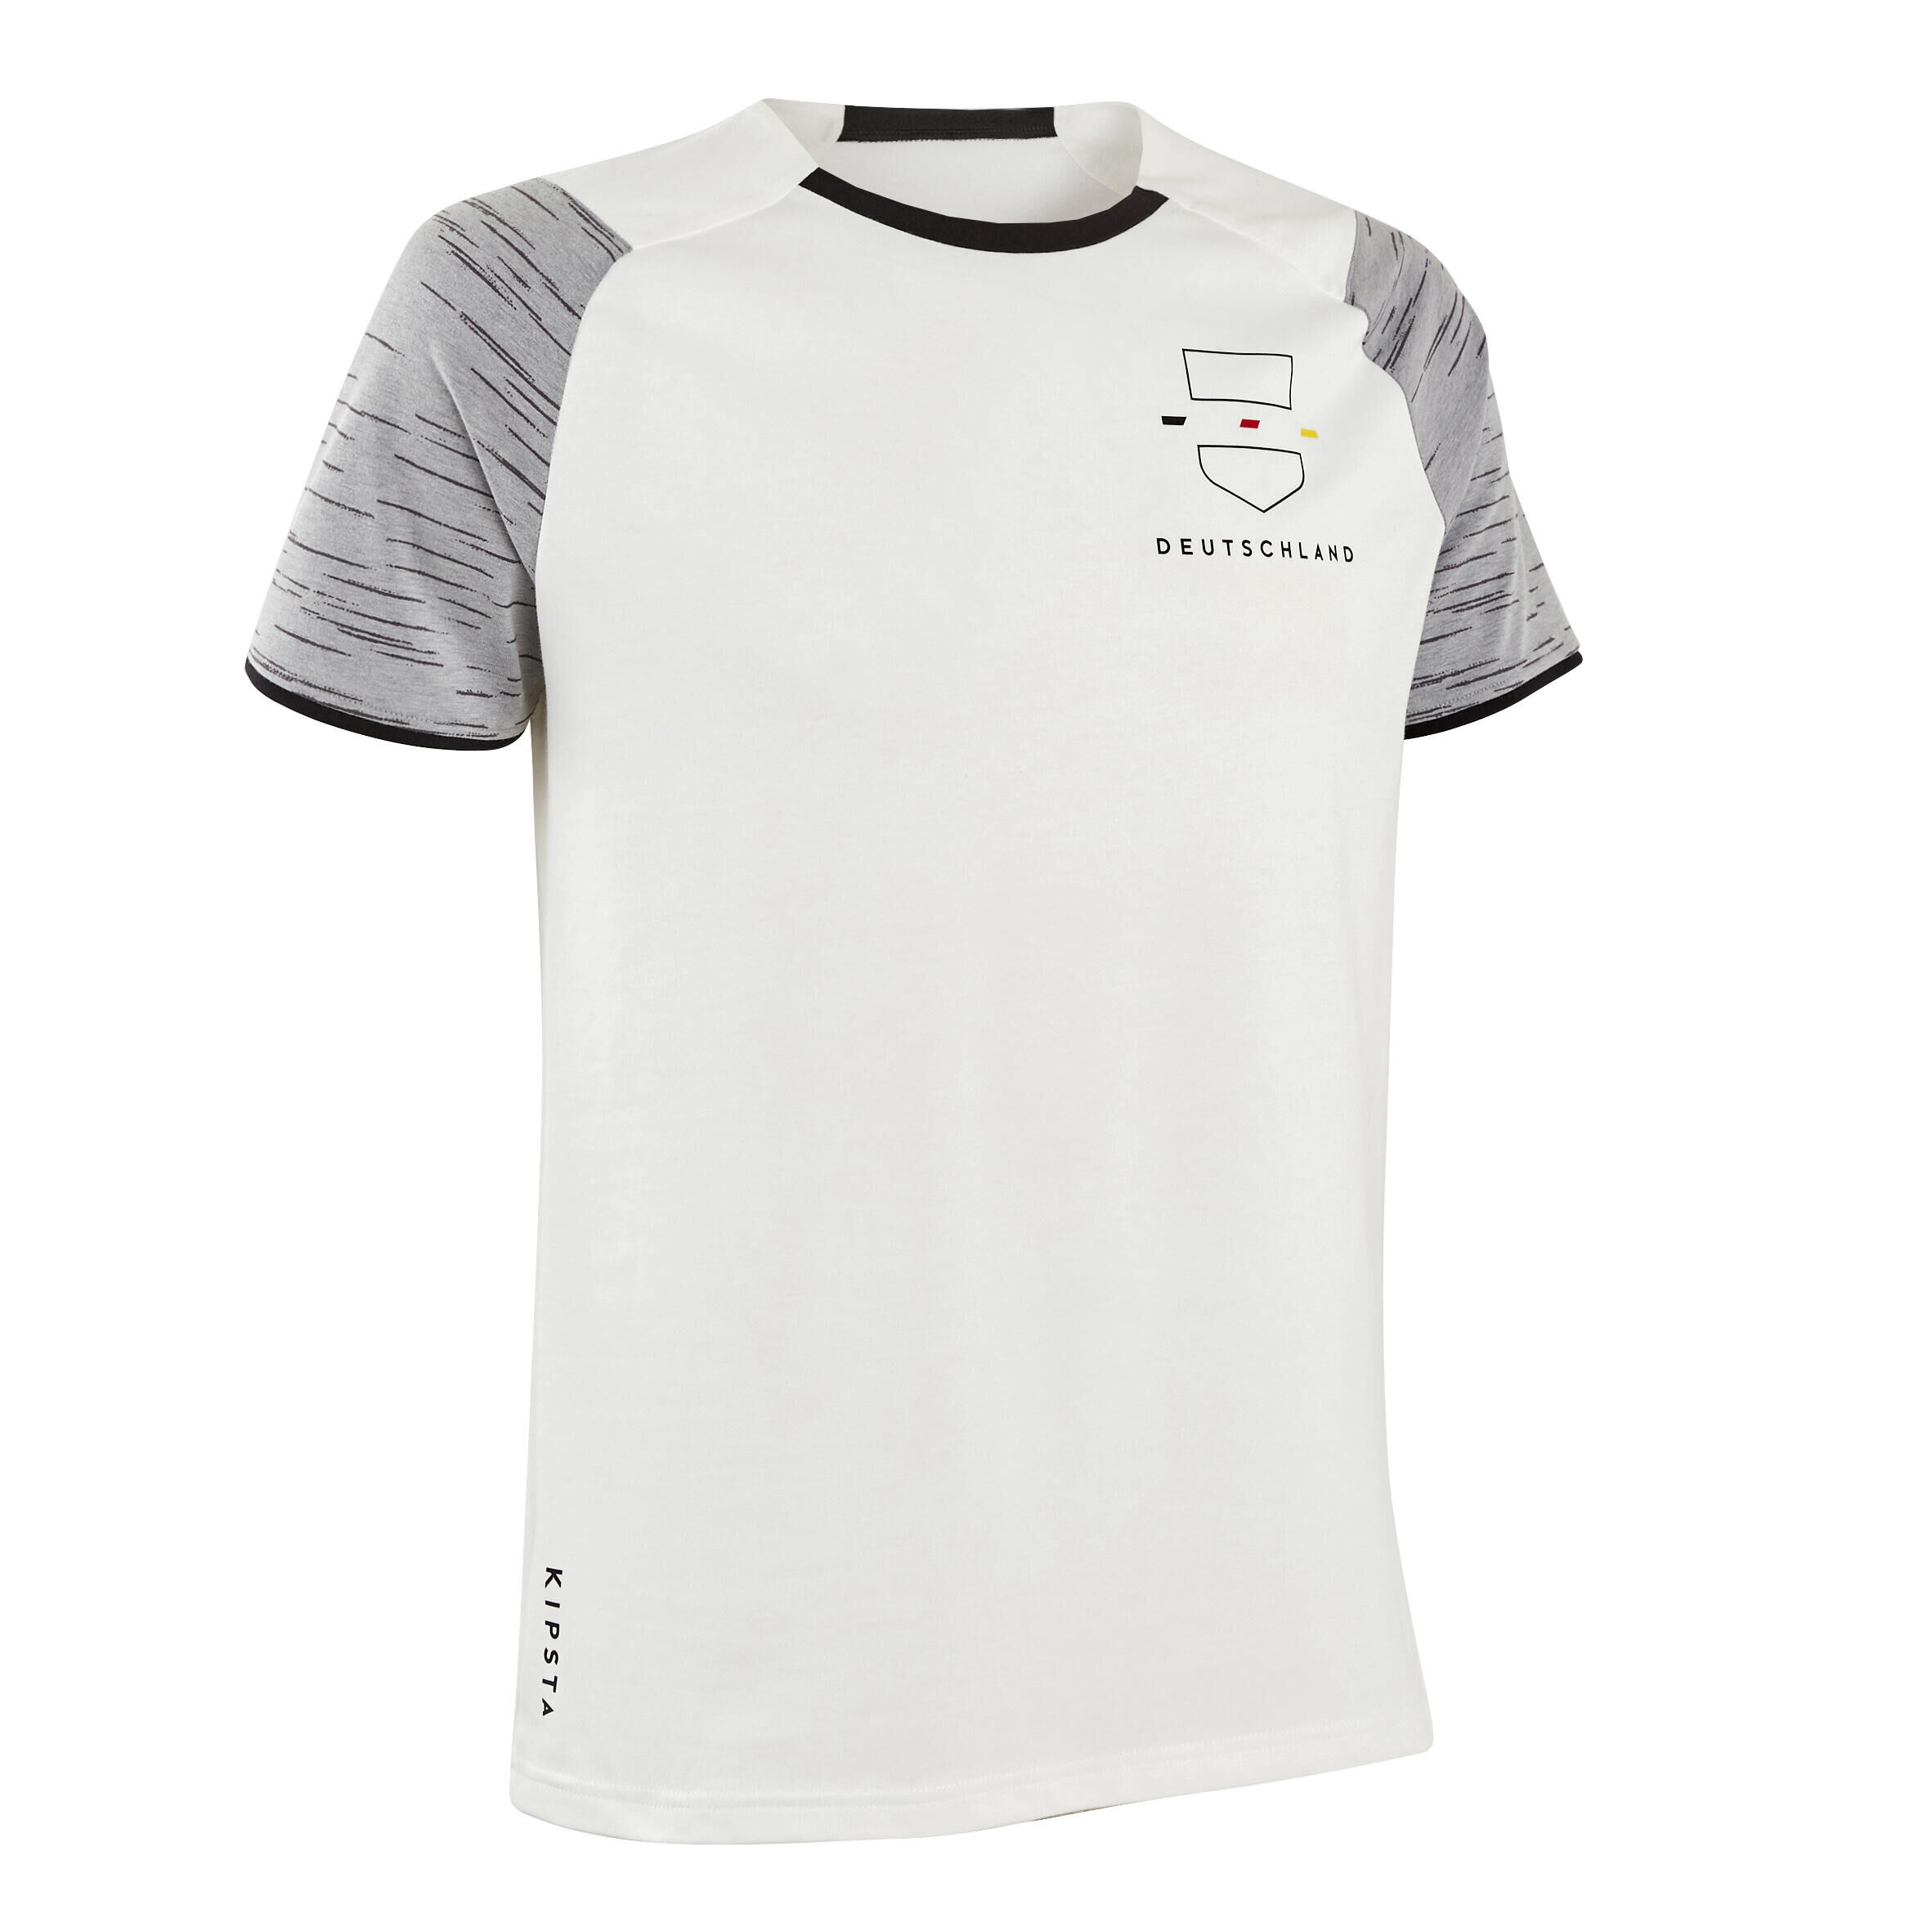 KIPSTA Adult Football Shirt FF100 - Germany